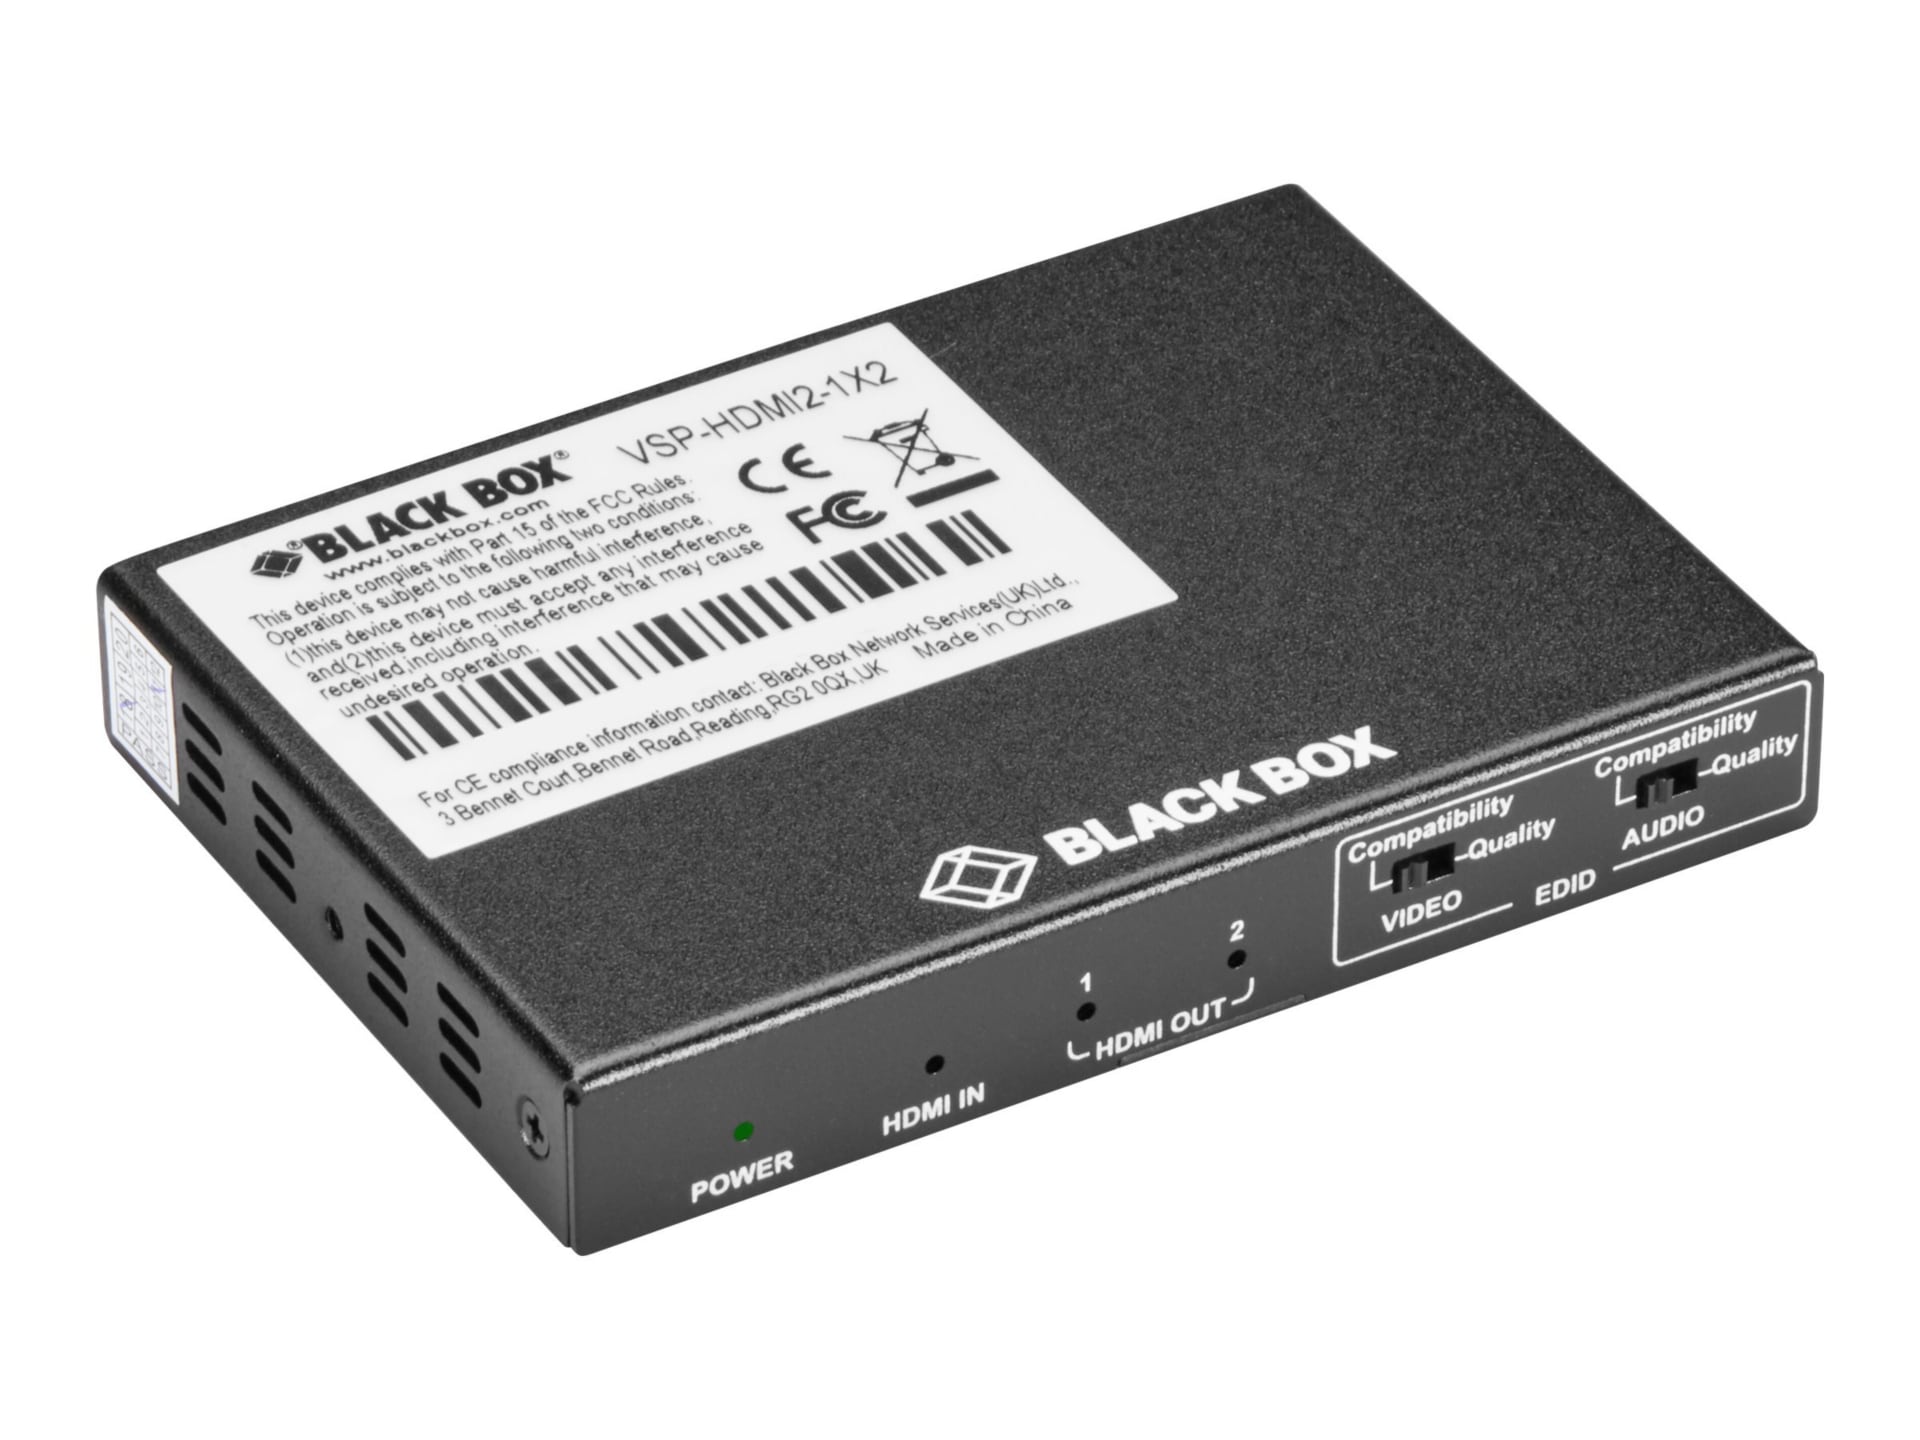 Black Box VSP-HDMI2-1X2 - video/audio splitter - 2 ports